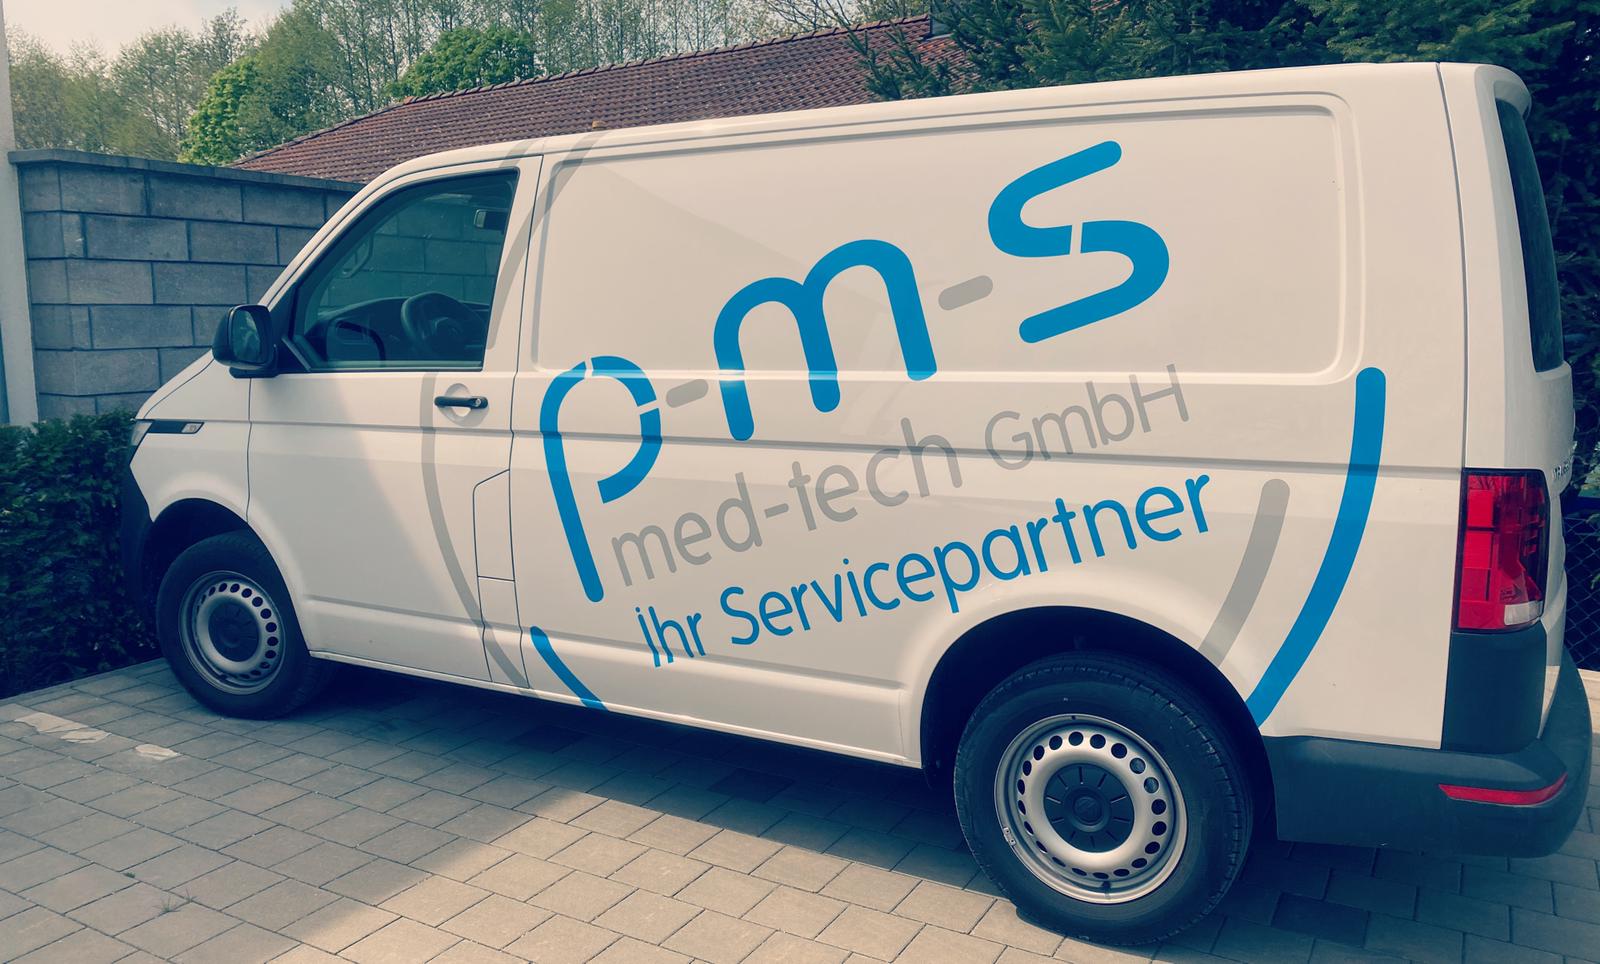 Bilder p-m-s med-tech GmbH & Co. KG